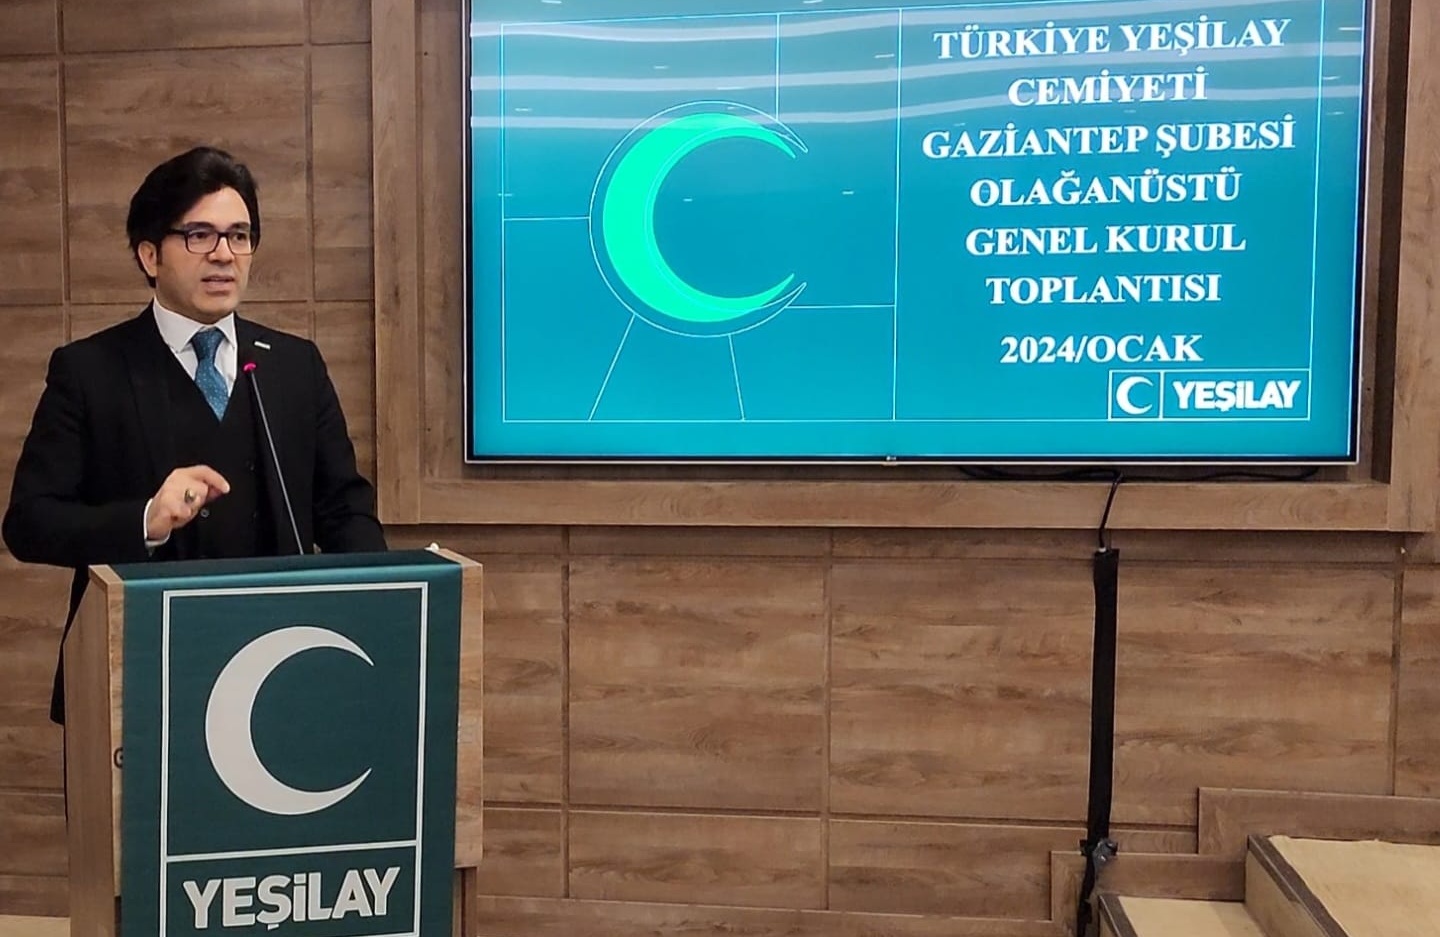 Yeşilay Gaziantep Şube Başkanı, Prof. Dr. Haluk Şen oldu